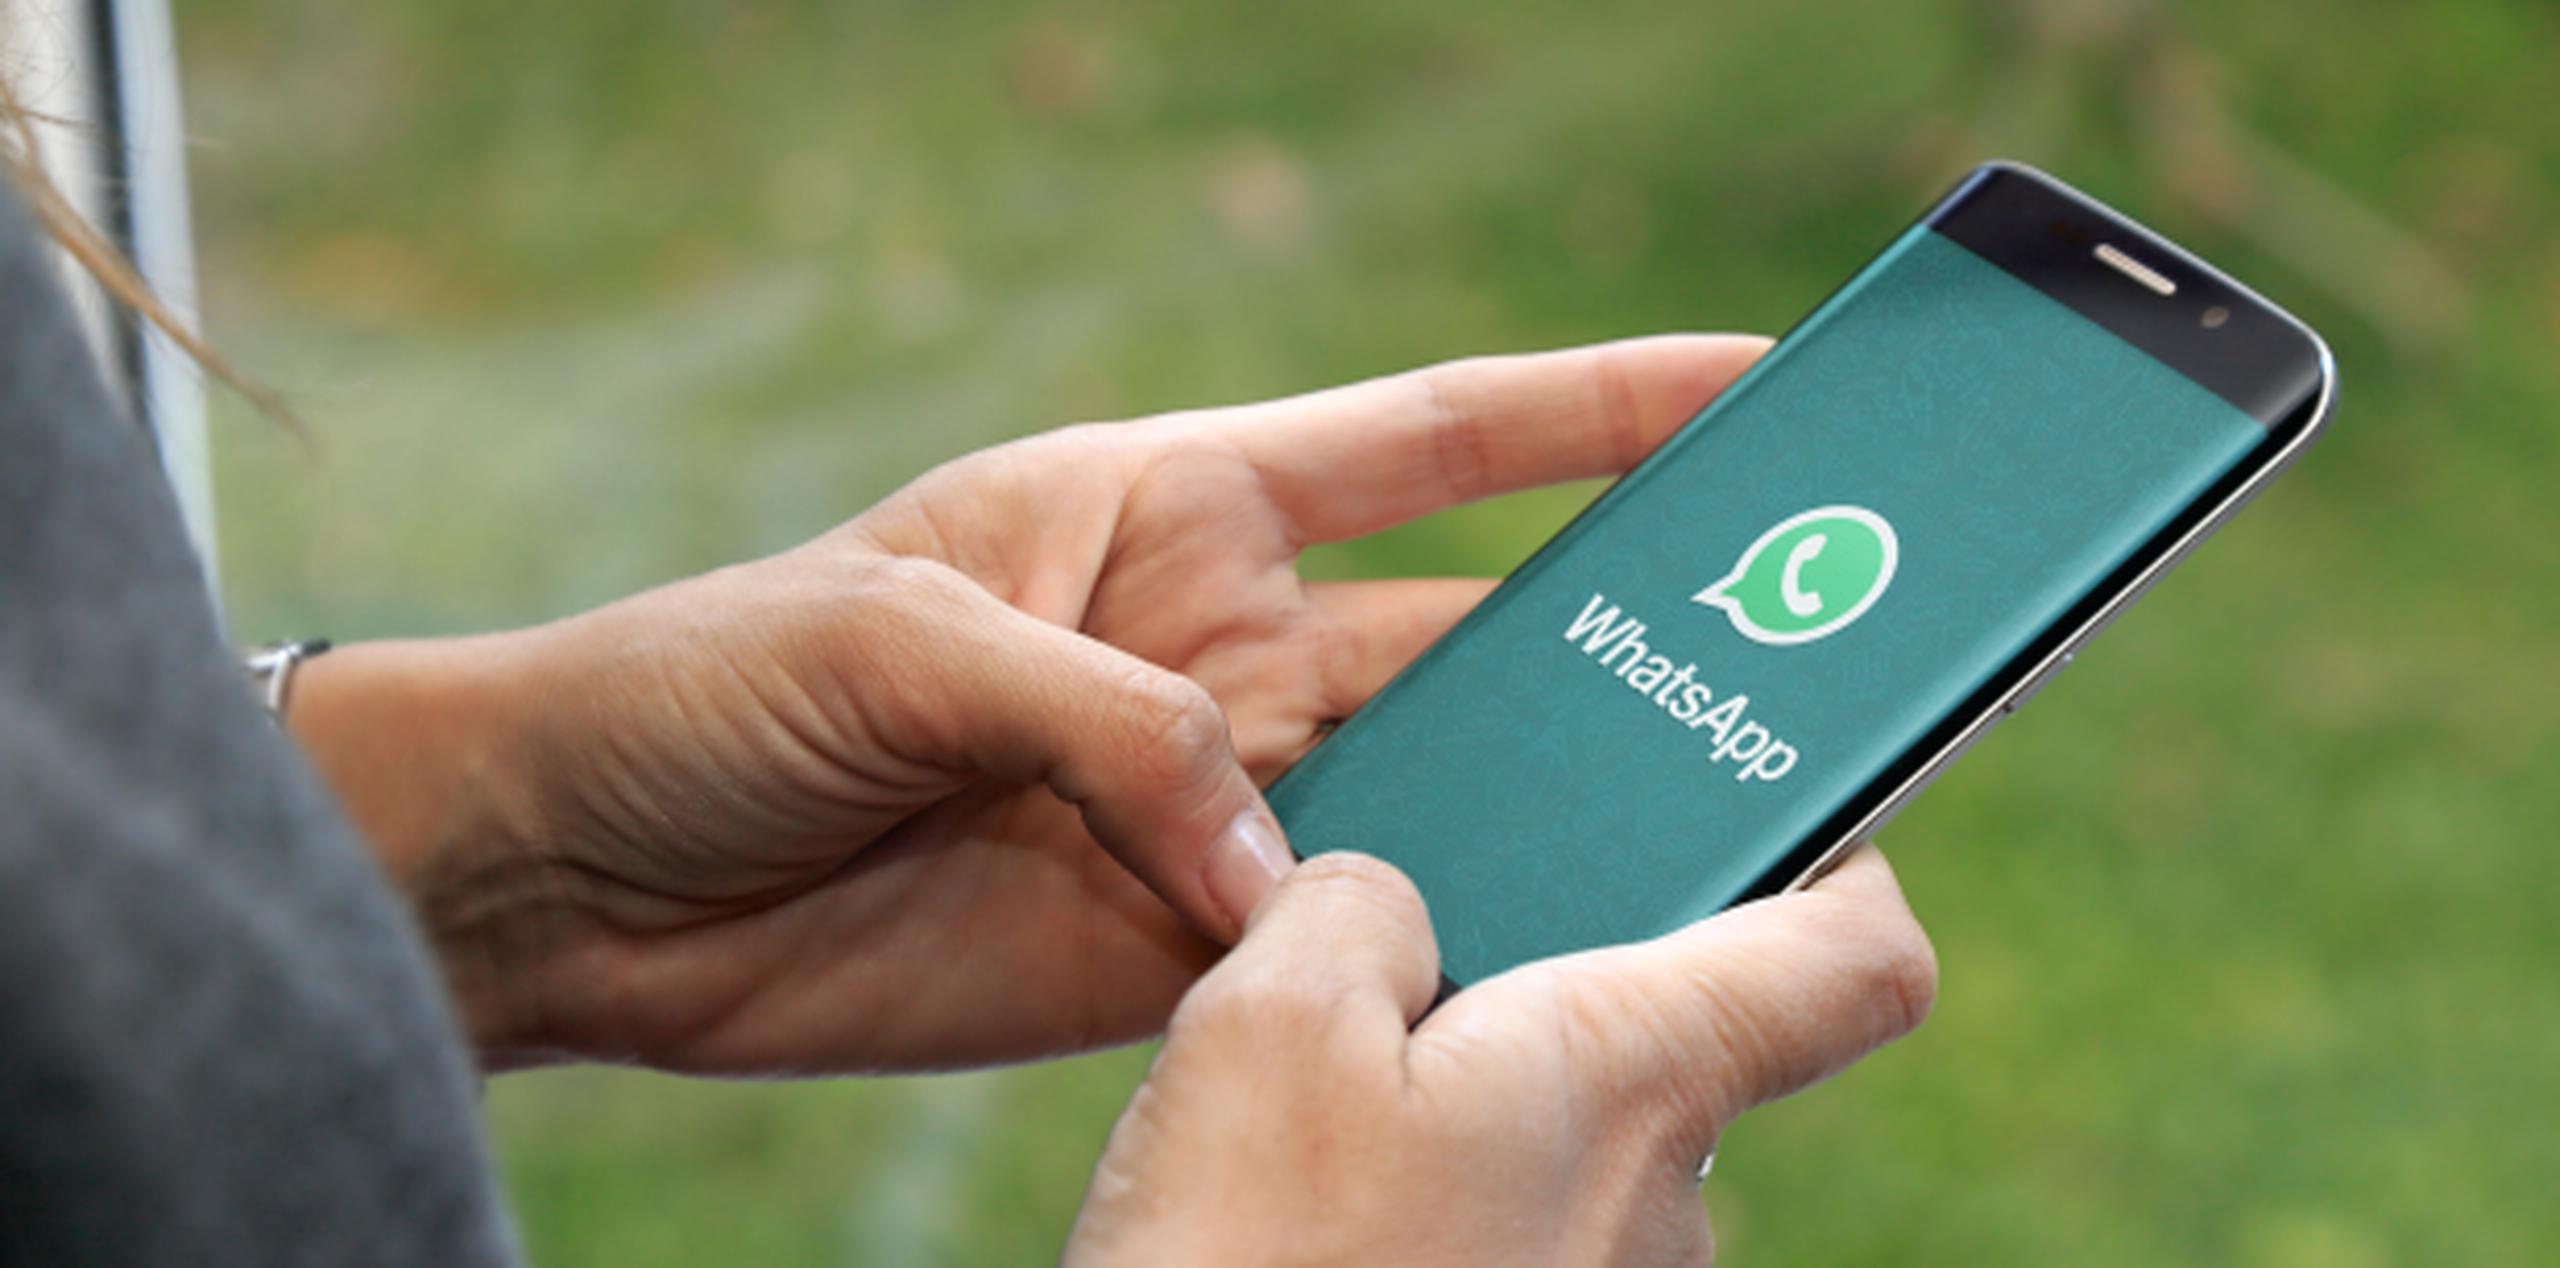 Si el usuario es menor a 13 años, WhatsApp puede dar de baja la cuenta. (Shutterstock)